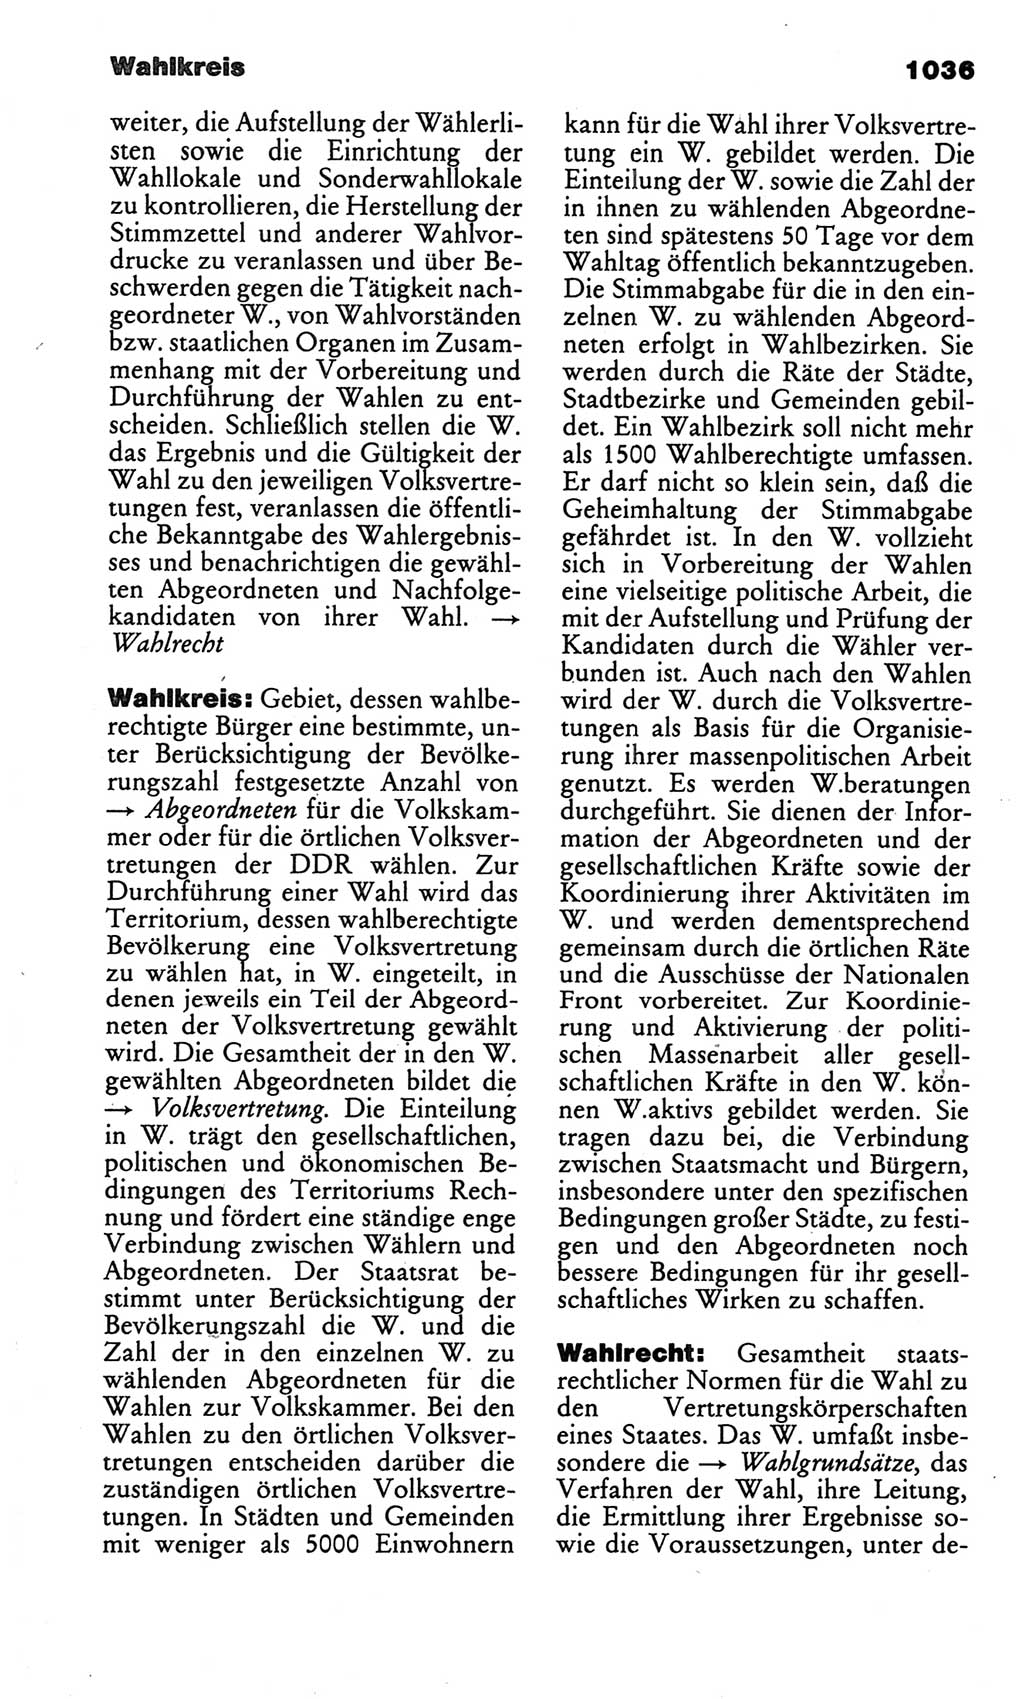 Kleines politisches Wörterbuch [Deutsche Demokratische Republik (DDR)] 1986, Seite 1036 (Kl. pol. Wb. DDR 1986, S. 1036)